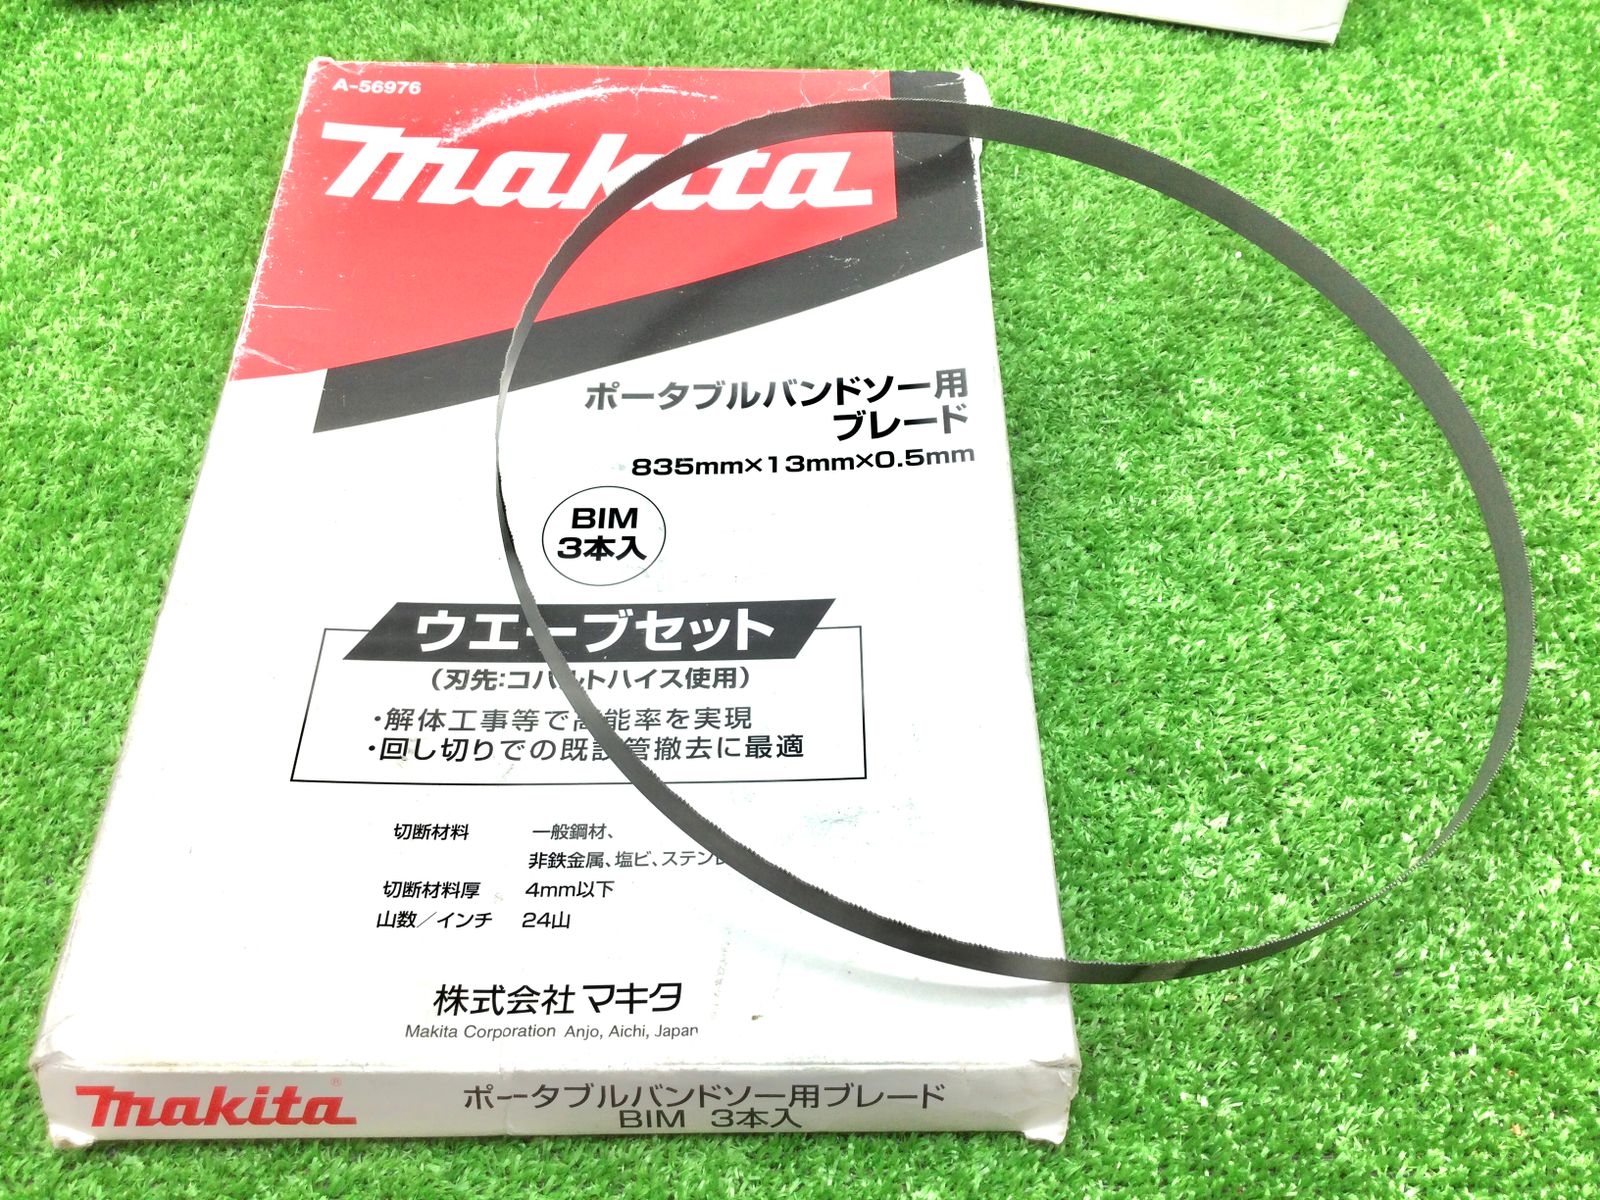 マキタ(Makita) ポータブルバンドソー用ブレード ウエーブセット BIM